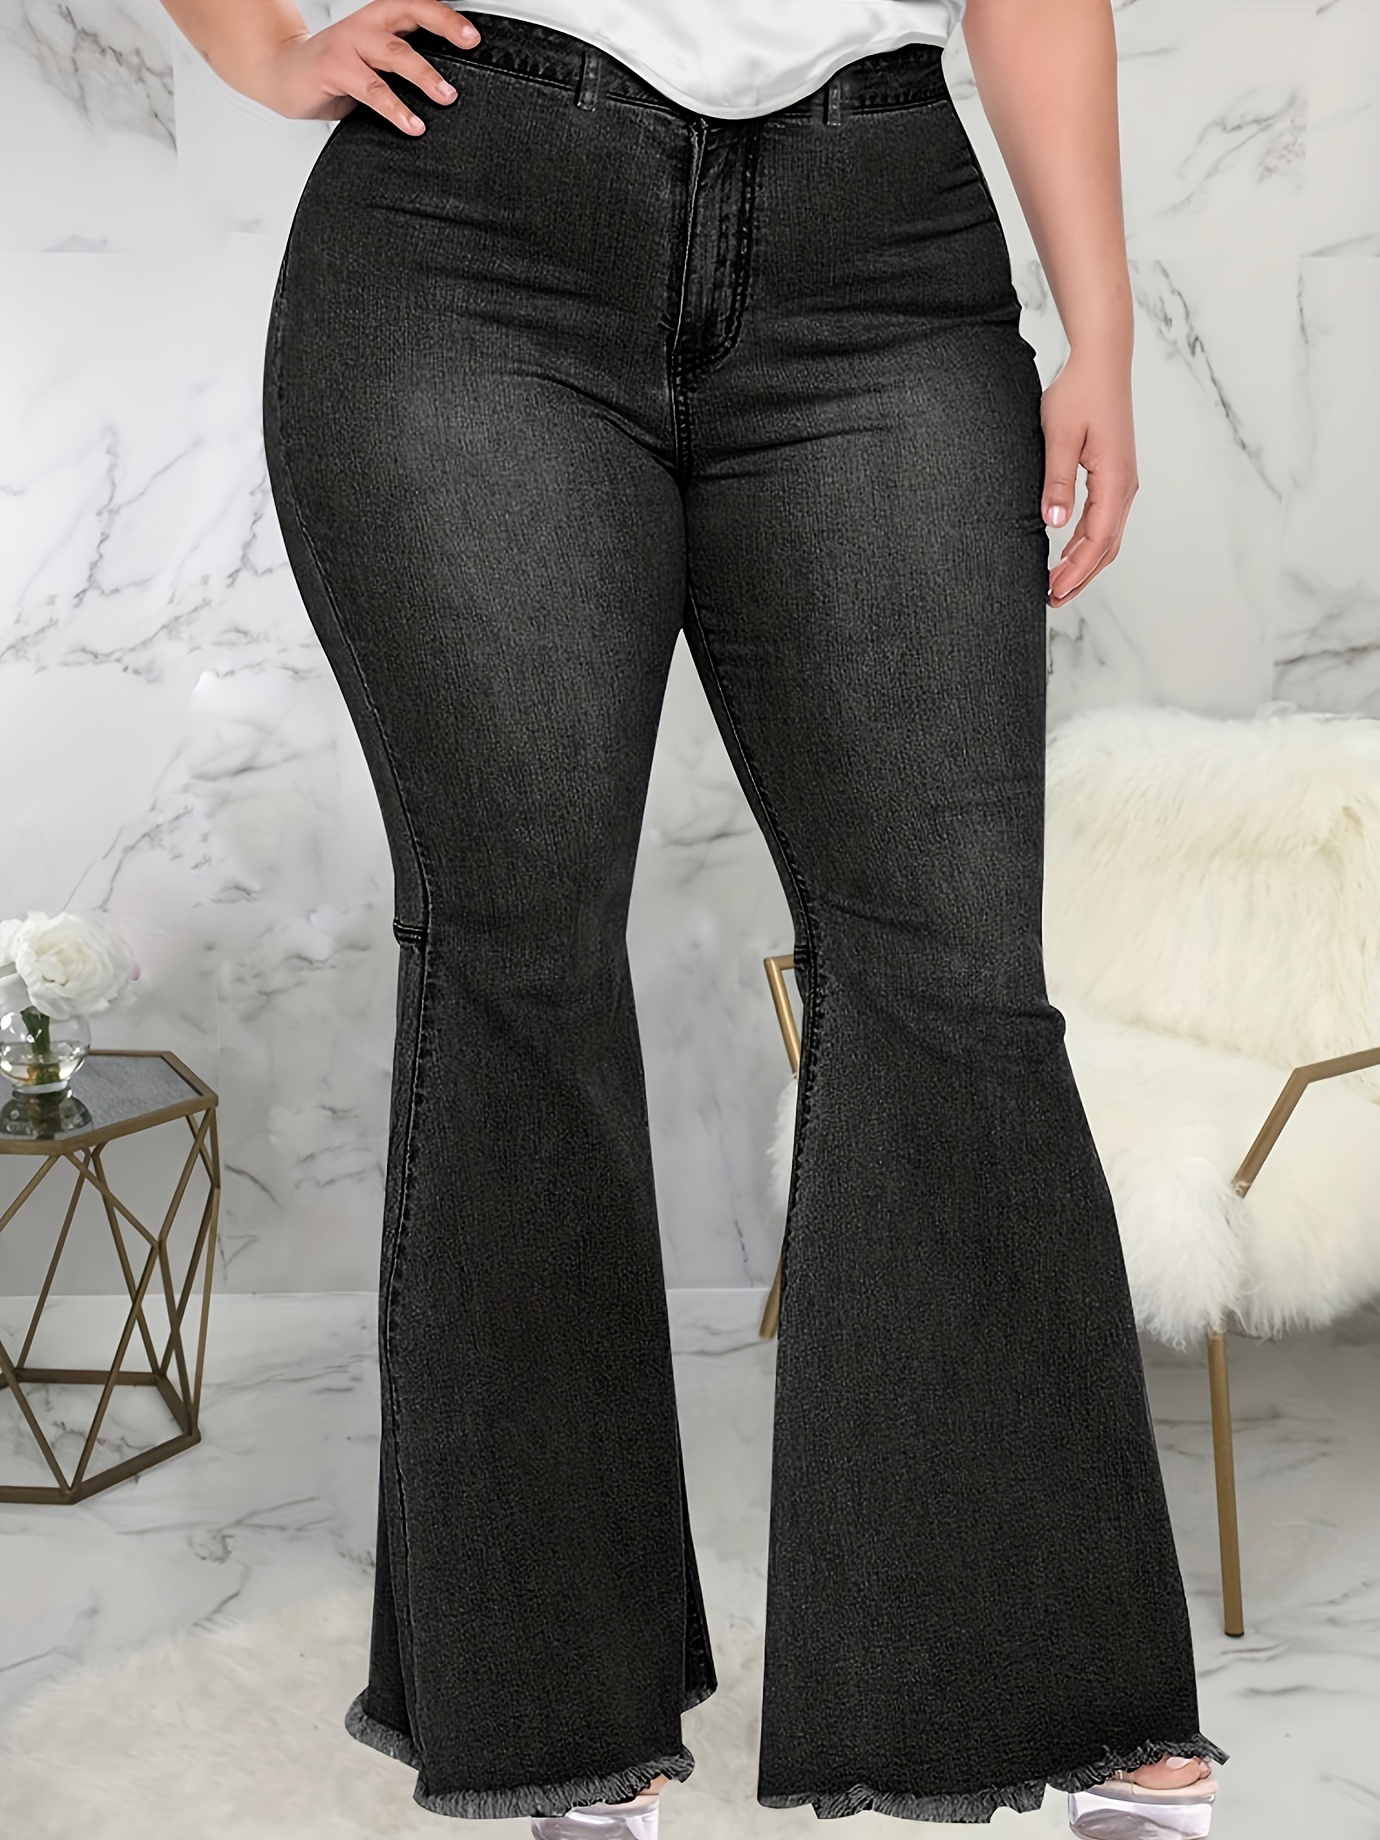 Bell Bottom Jeans For Women - Temu